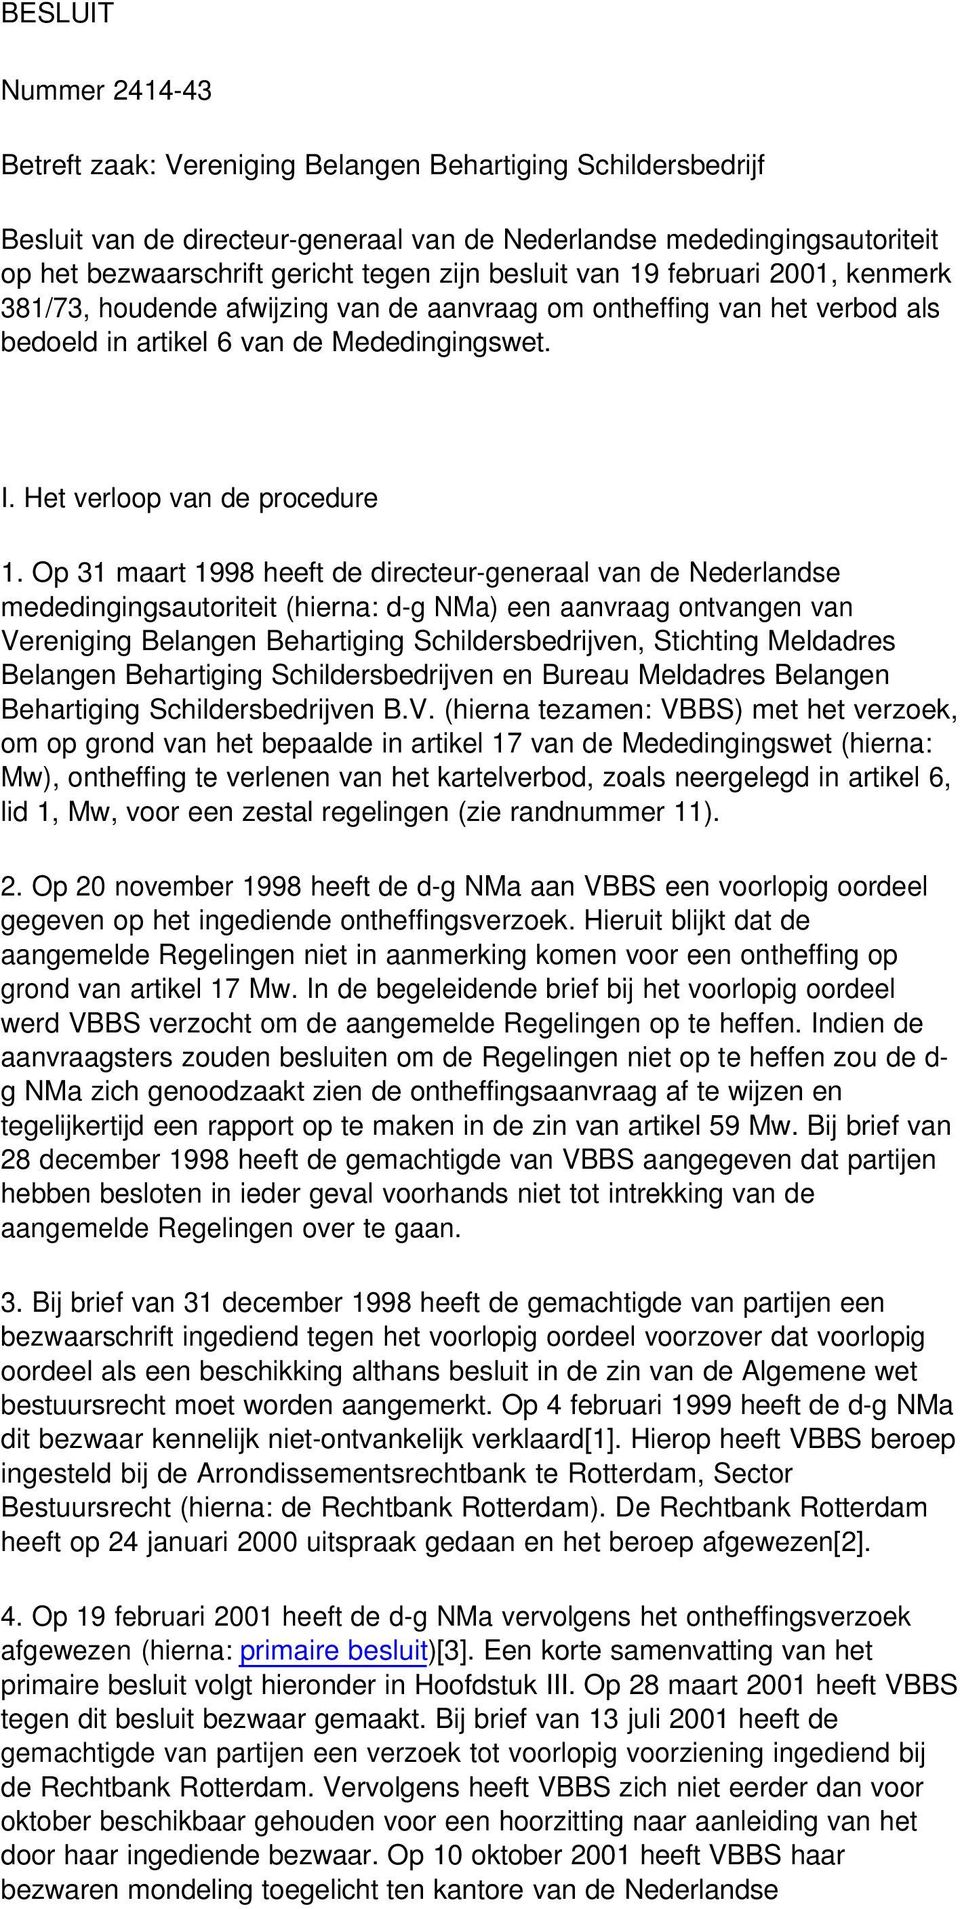 Op 31 maart 1998 heeft de directeur-generaal van de Nederlandse mededingingsautoriteit (hierna: d-g NMa) een aanvraag ontvangen van Vereniging Belangen Behartiging Schildersbedrijven, Stichting